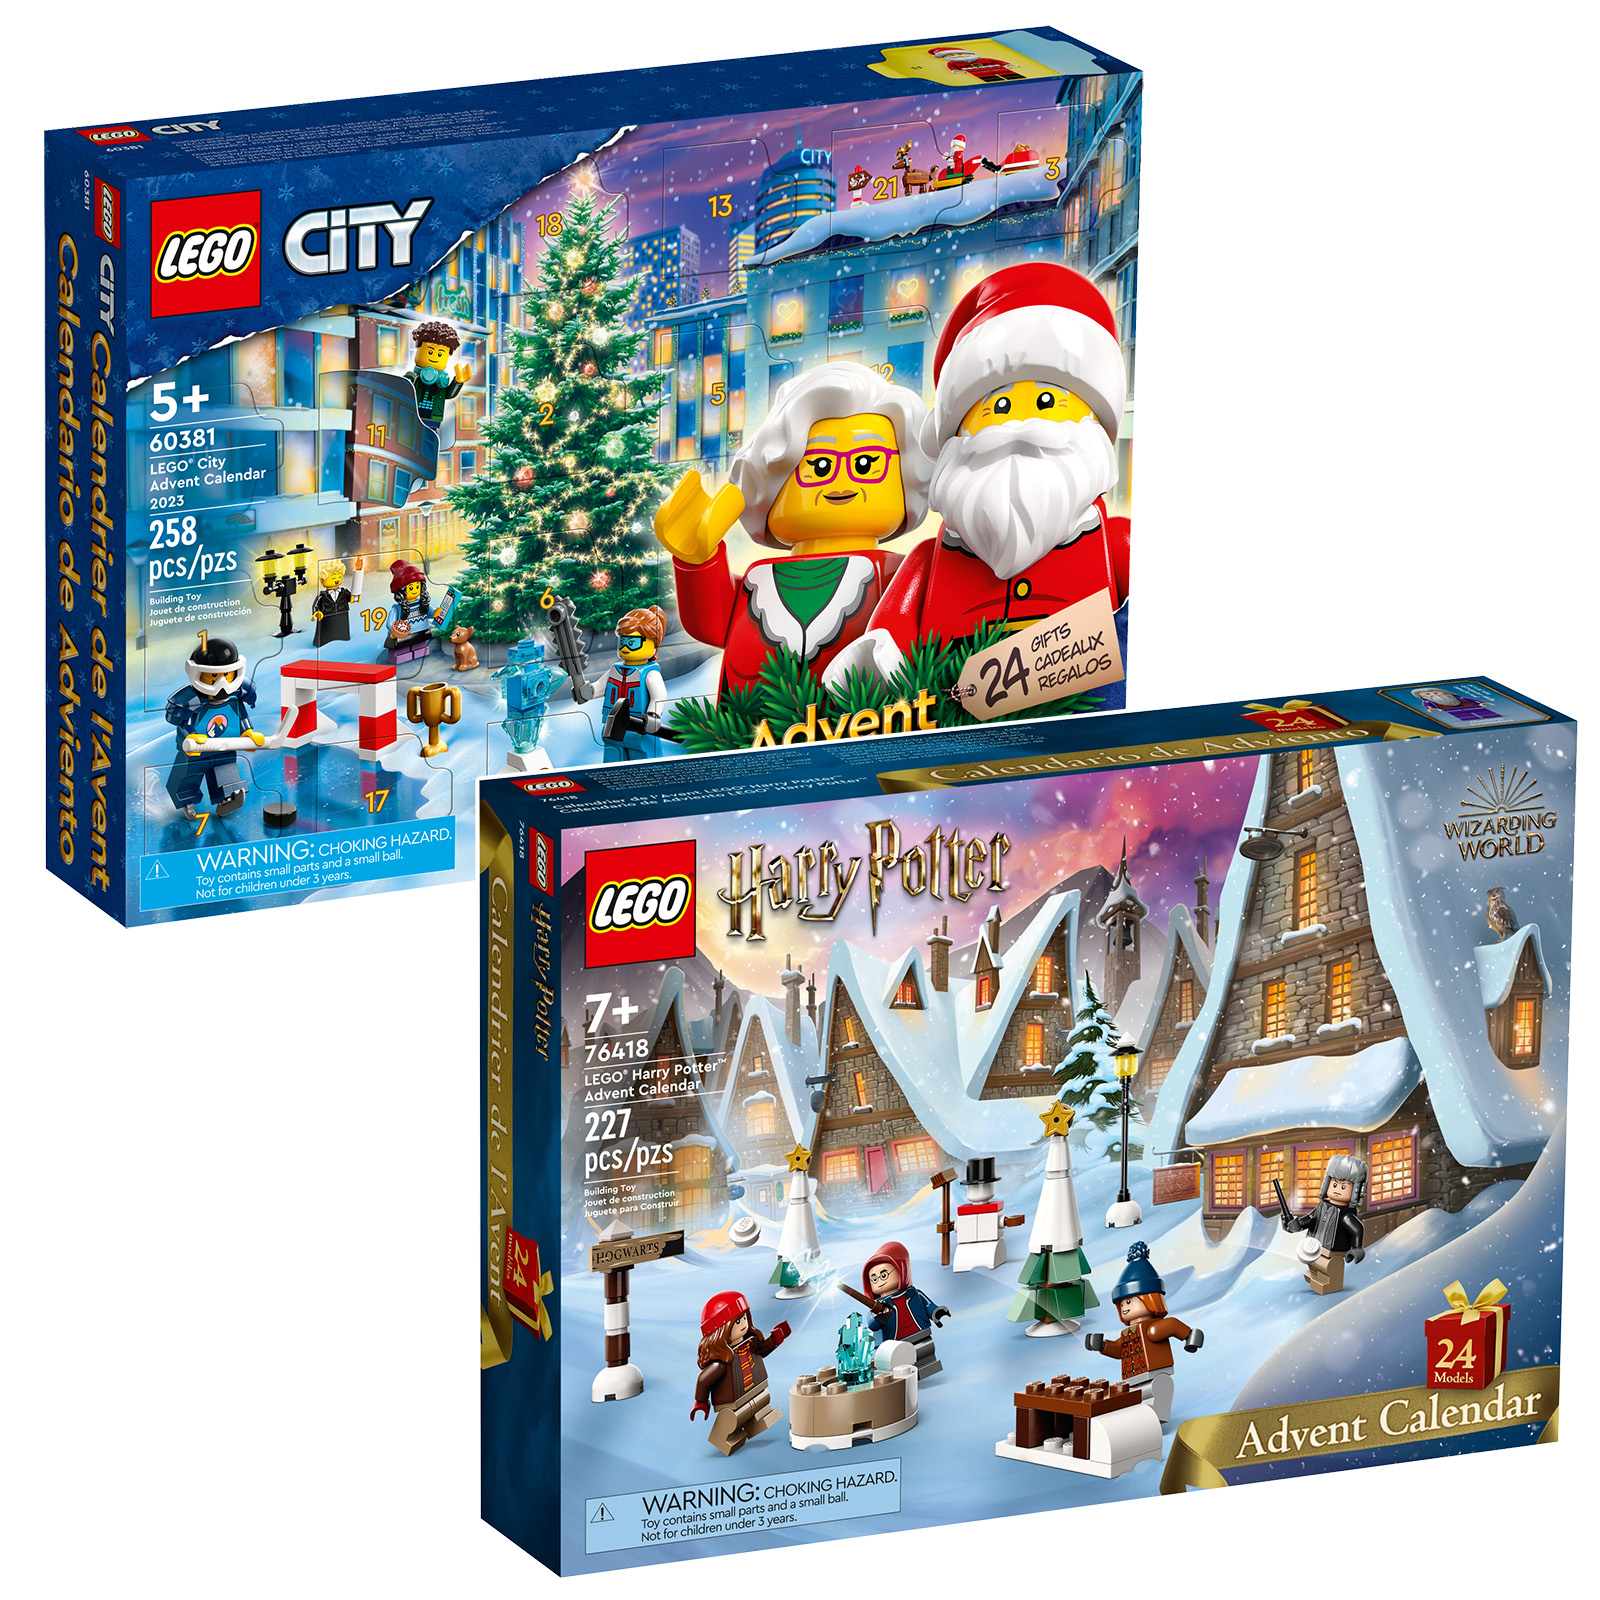 LEGO 76418 Harry Potter adventskalender og LEGO 60381 CITY